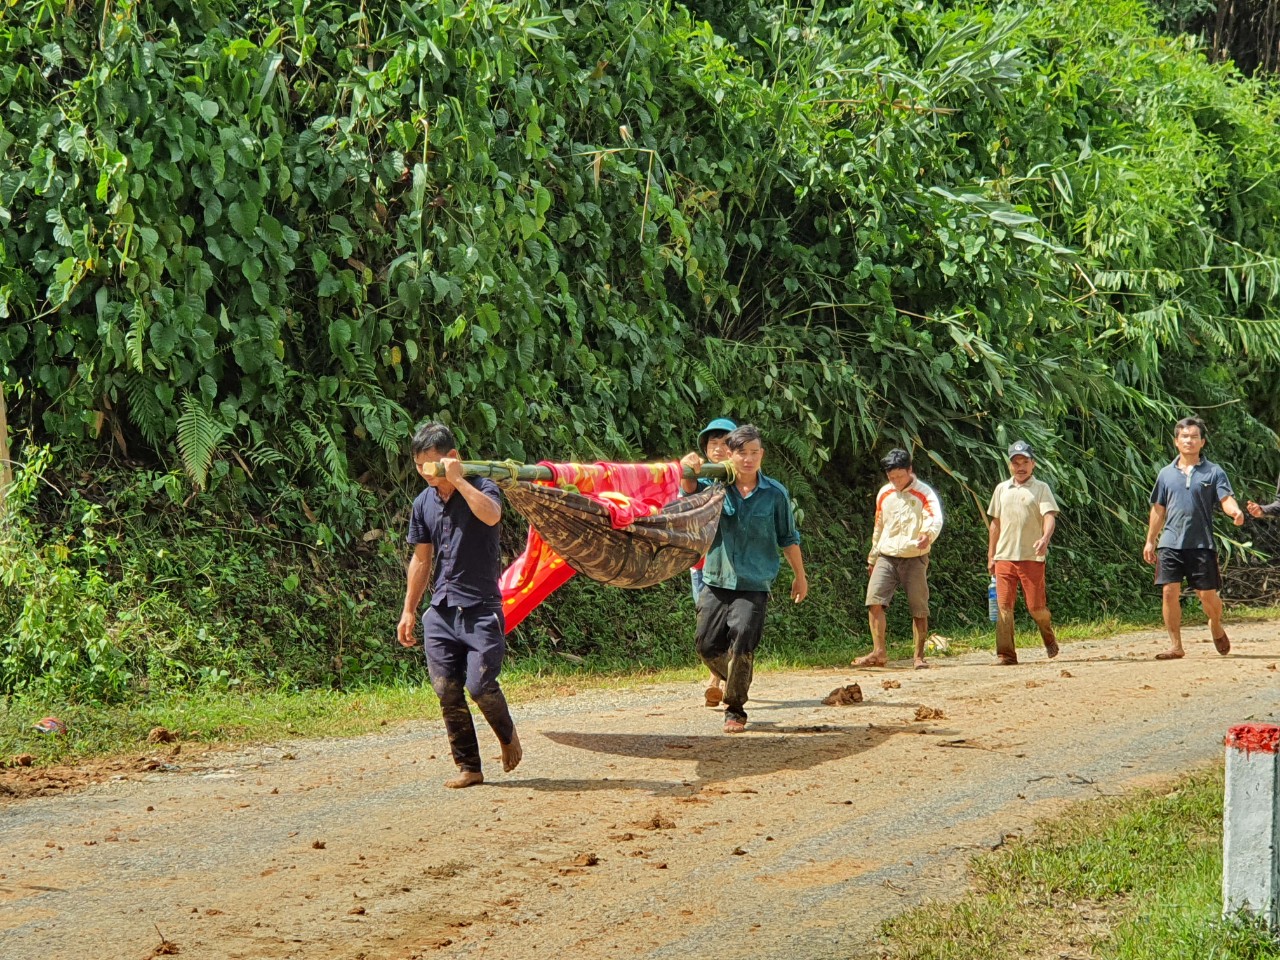 Thảm nạn ở vùng cao Quảng Nam: Chạy đua cứu nạn với thời tiết